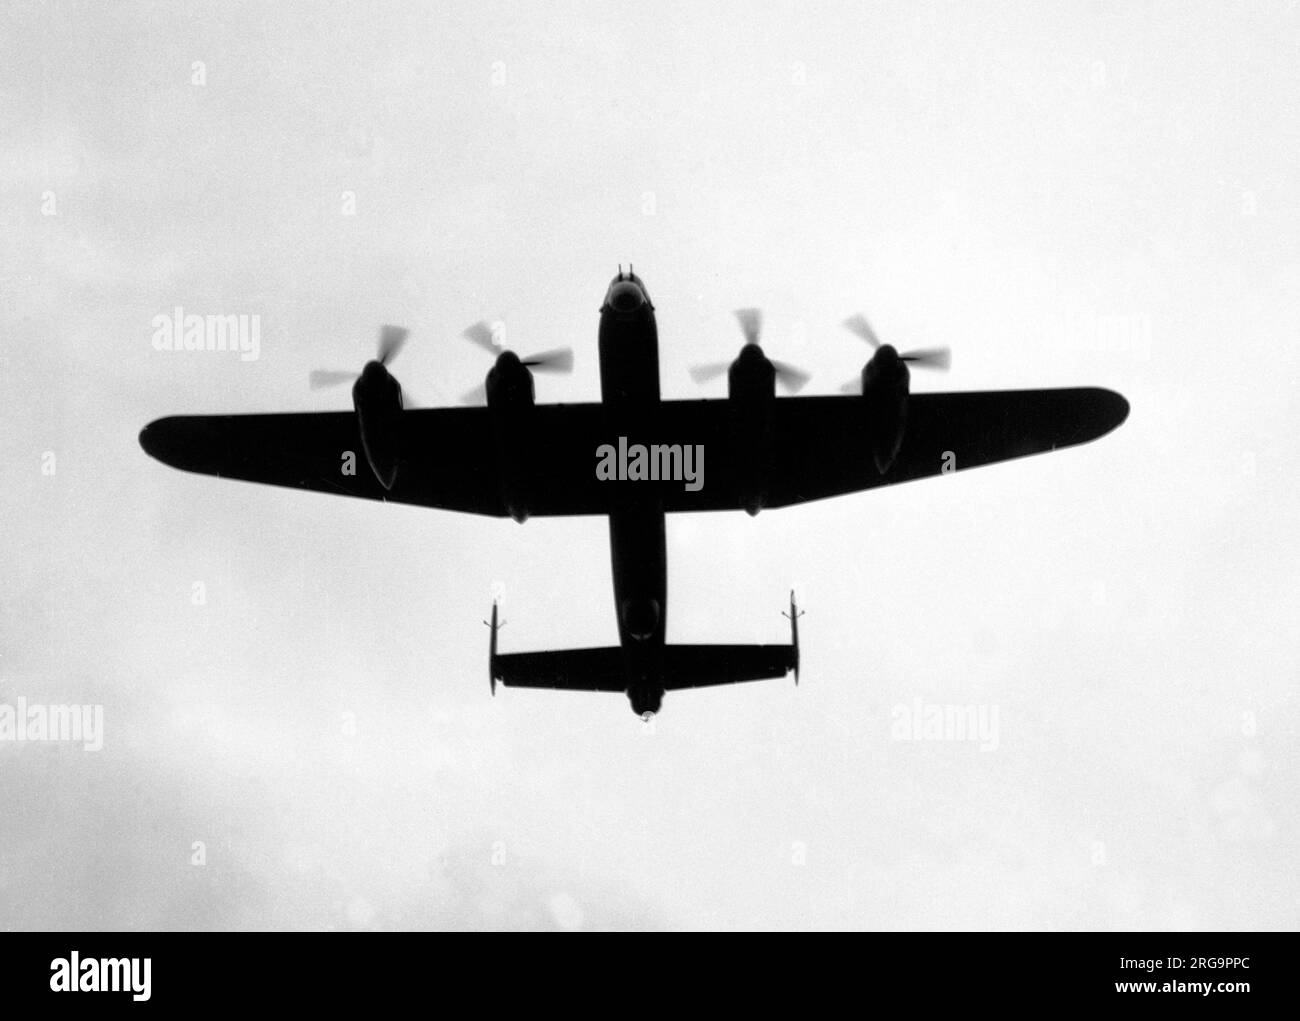 Royal Air Force - Avro Lancaster B.VI, l'un des neuf avions convertis de B.IIIs, équipé de Rolls-Royce Merlin 85/87 qui avaient des chargeurs à deux étages, offrant des performances en altitude nettement améliorées. Utilisés par les escadrons Pathfinder pour une courte période, les survivants ont été relégués à des fonctions secondaires. Banque D'Images